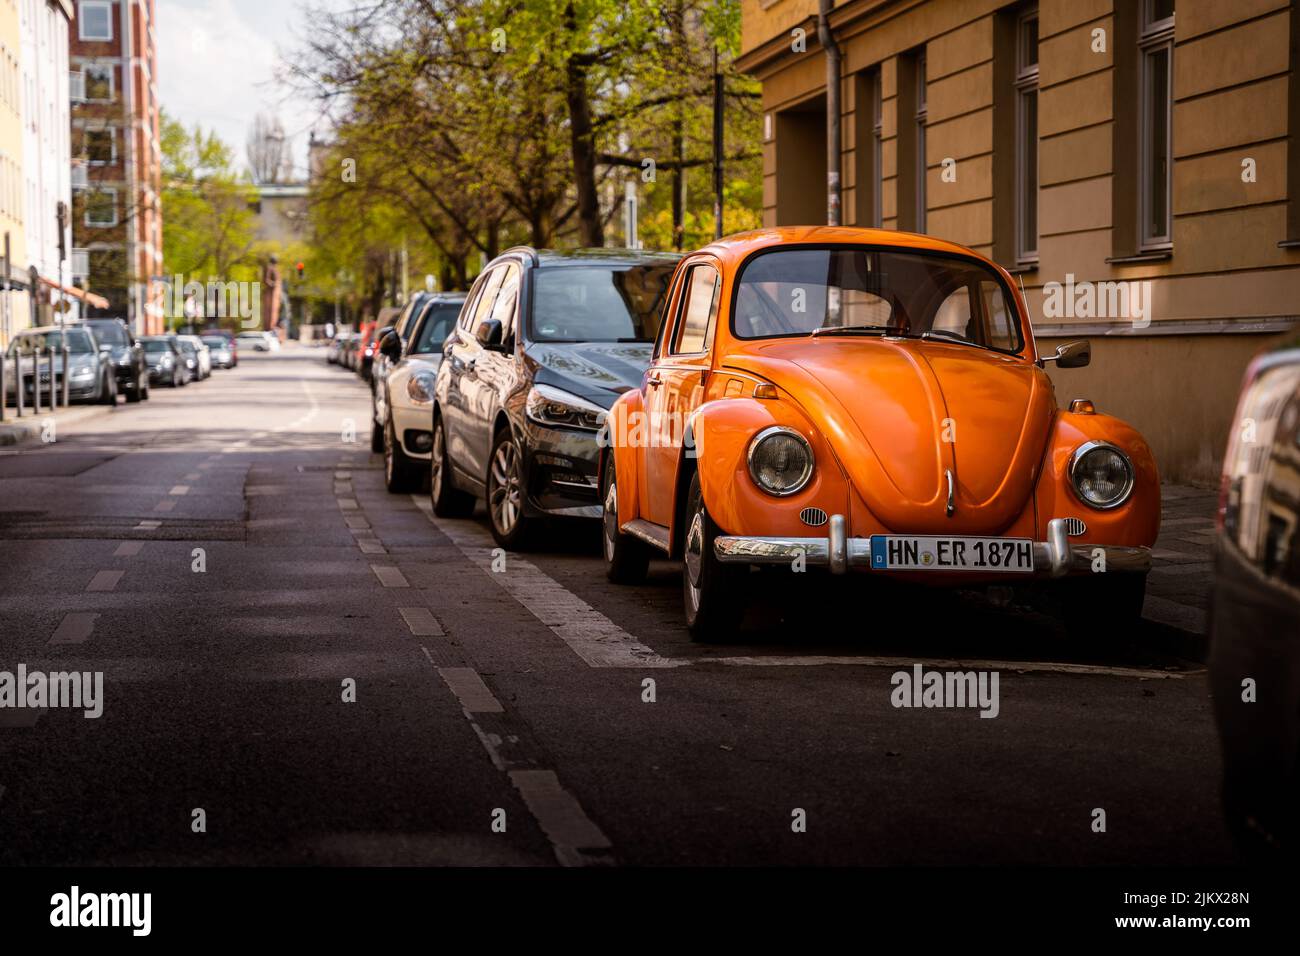 Storico coleottero VW con vernice arancione. L'auto classica si trova nel centro di Monaco e si inserisce bene nel panorama storico Foto Stock